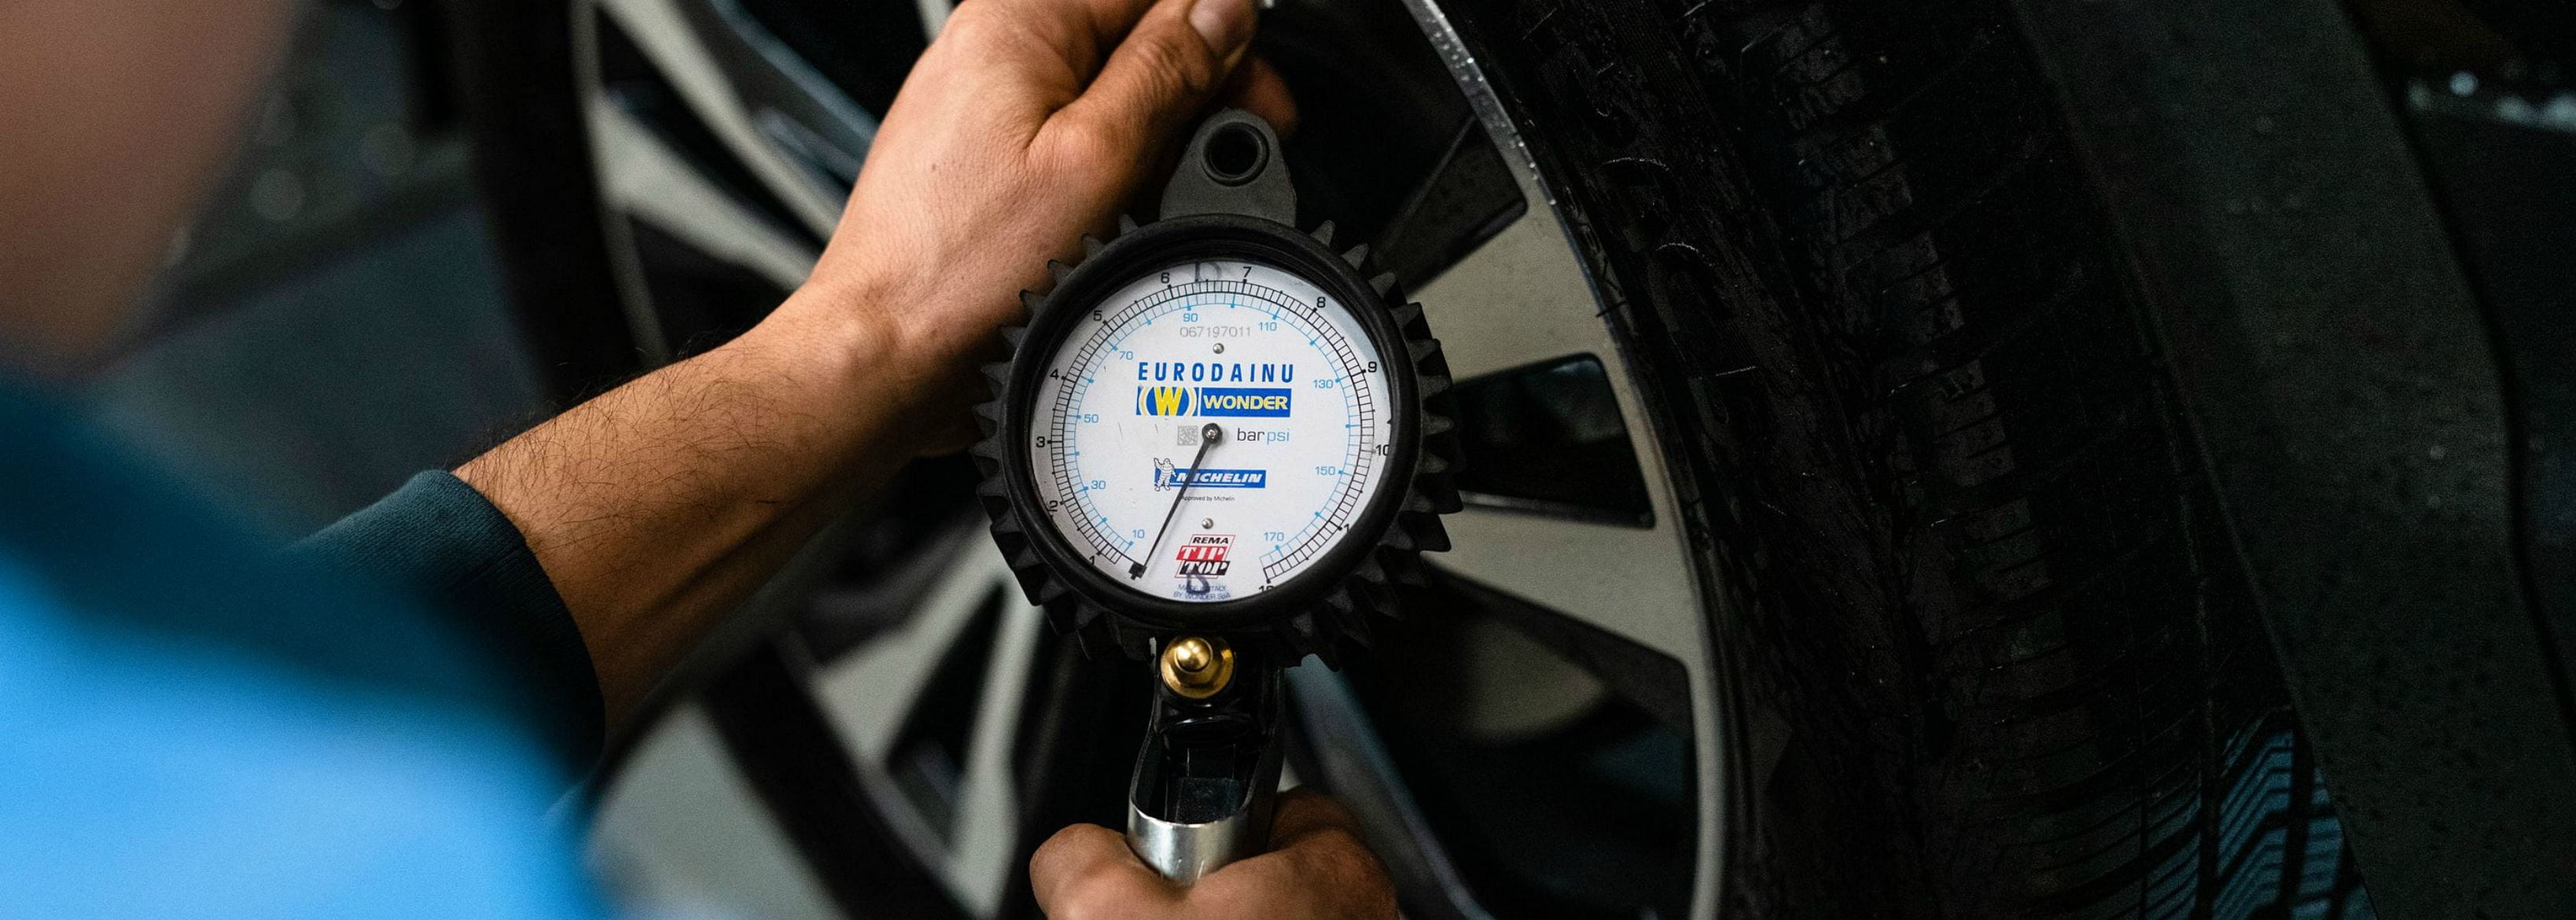 man measures tyre pressure